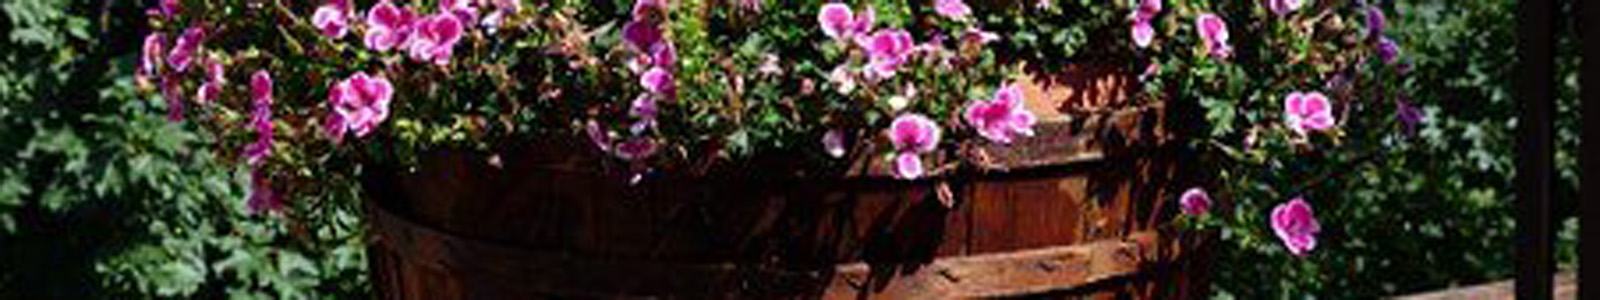 Rosa Blüten in einem Bottich@pixabay